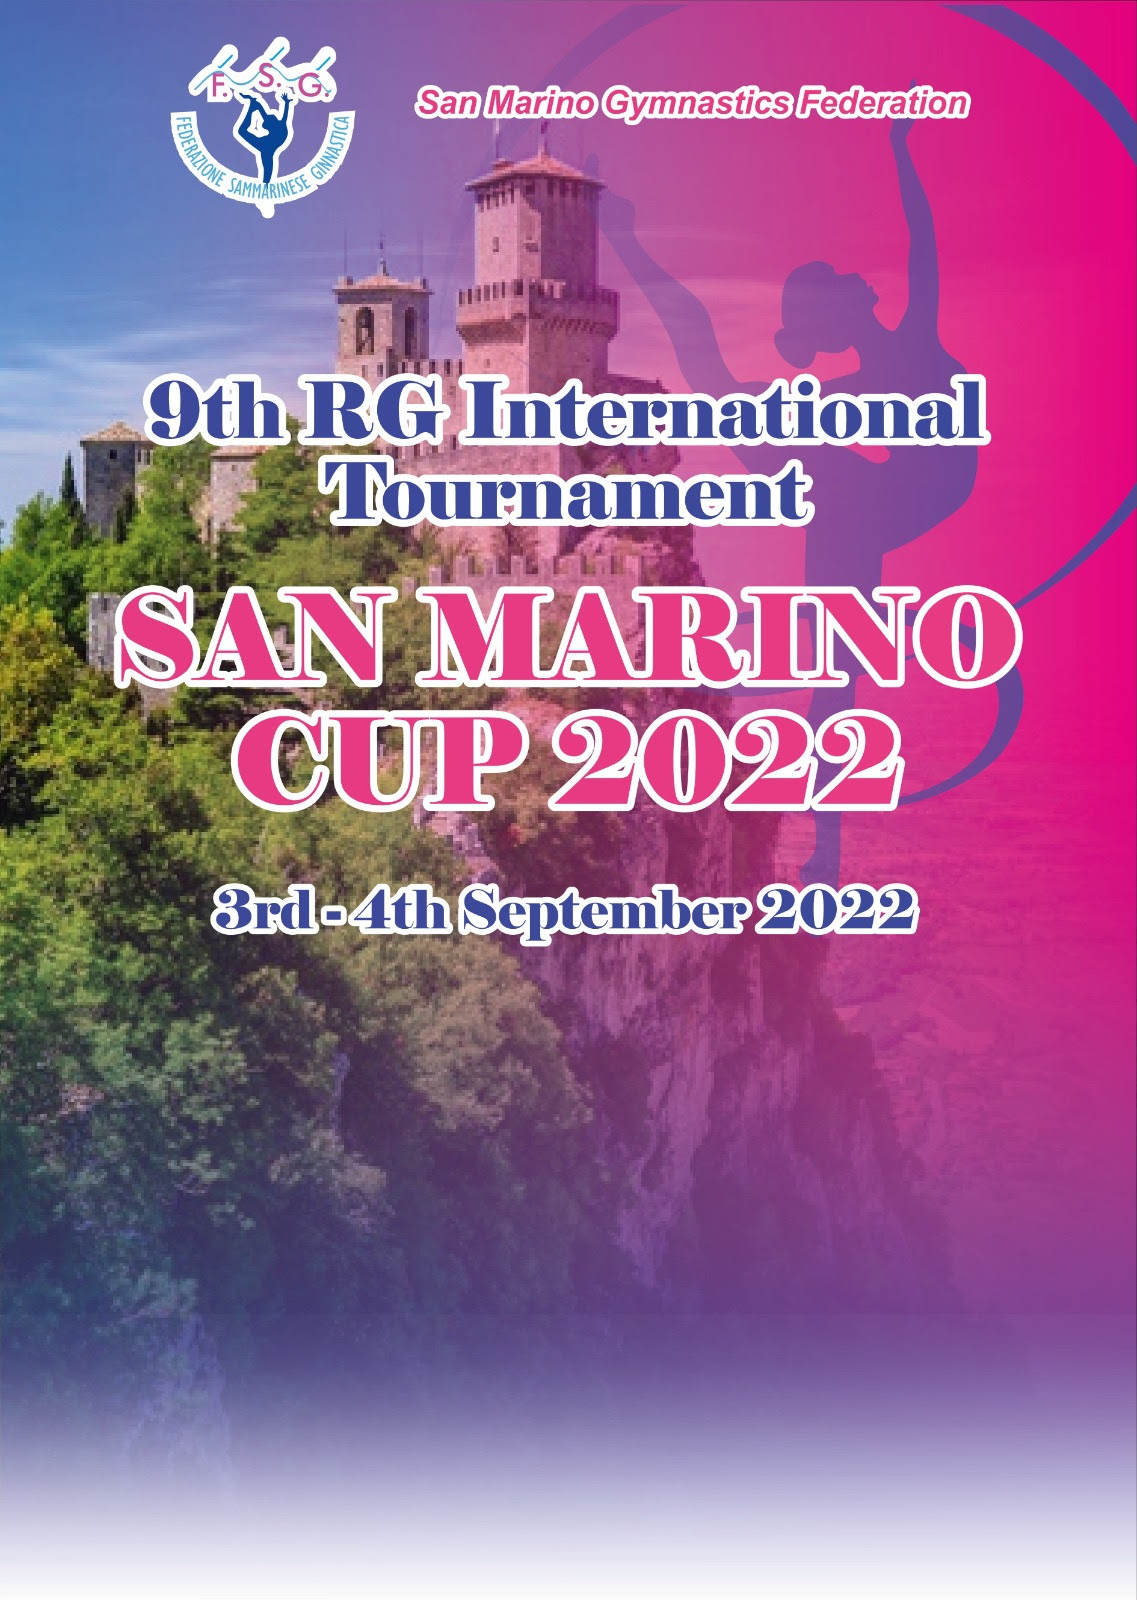 Al via il San Marino Cup 2022, 9° Edizione del Torneo Internazionale di Ginnastica Ritmica